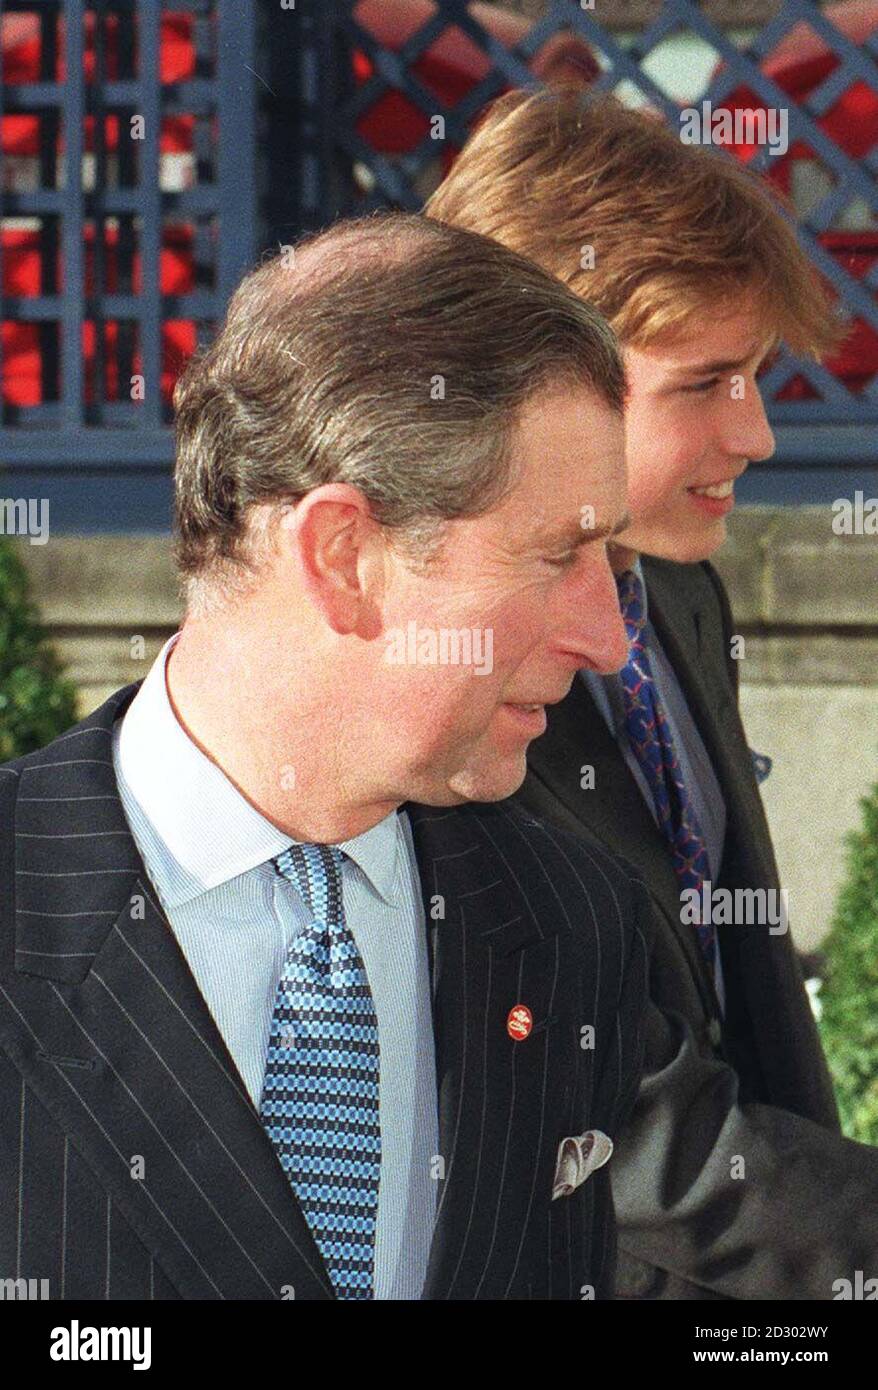 Le Prince de Galles et son fils le Prince William au Ritz du centre de Londres aujourd'hui (Weds) où le Prince de Galles a accueilli la fête annuelle du personnel. Voir PA Story ROYAL Prince. Photo de John Stillwell. WPA ROTA. Banque D'Images